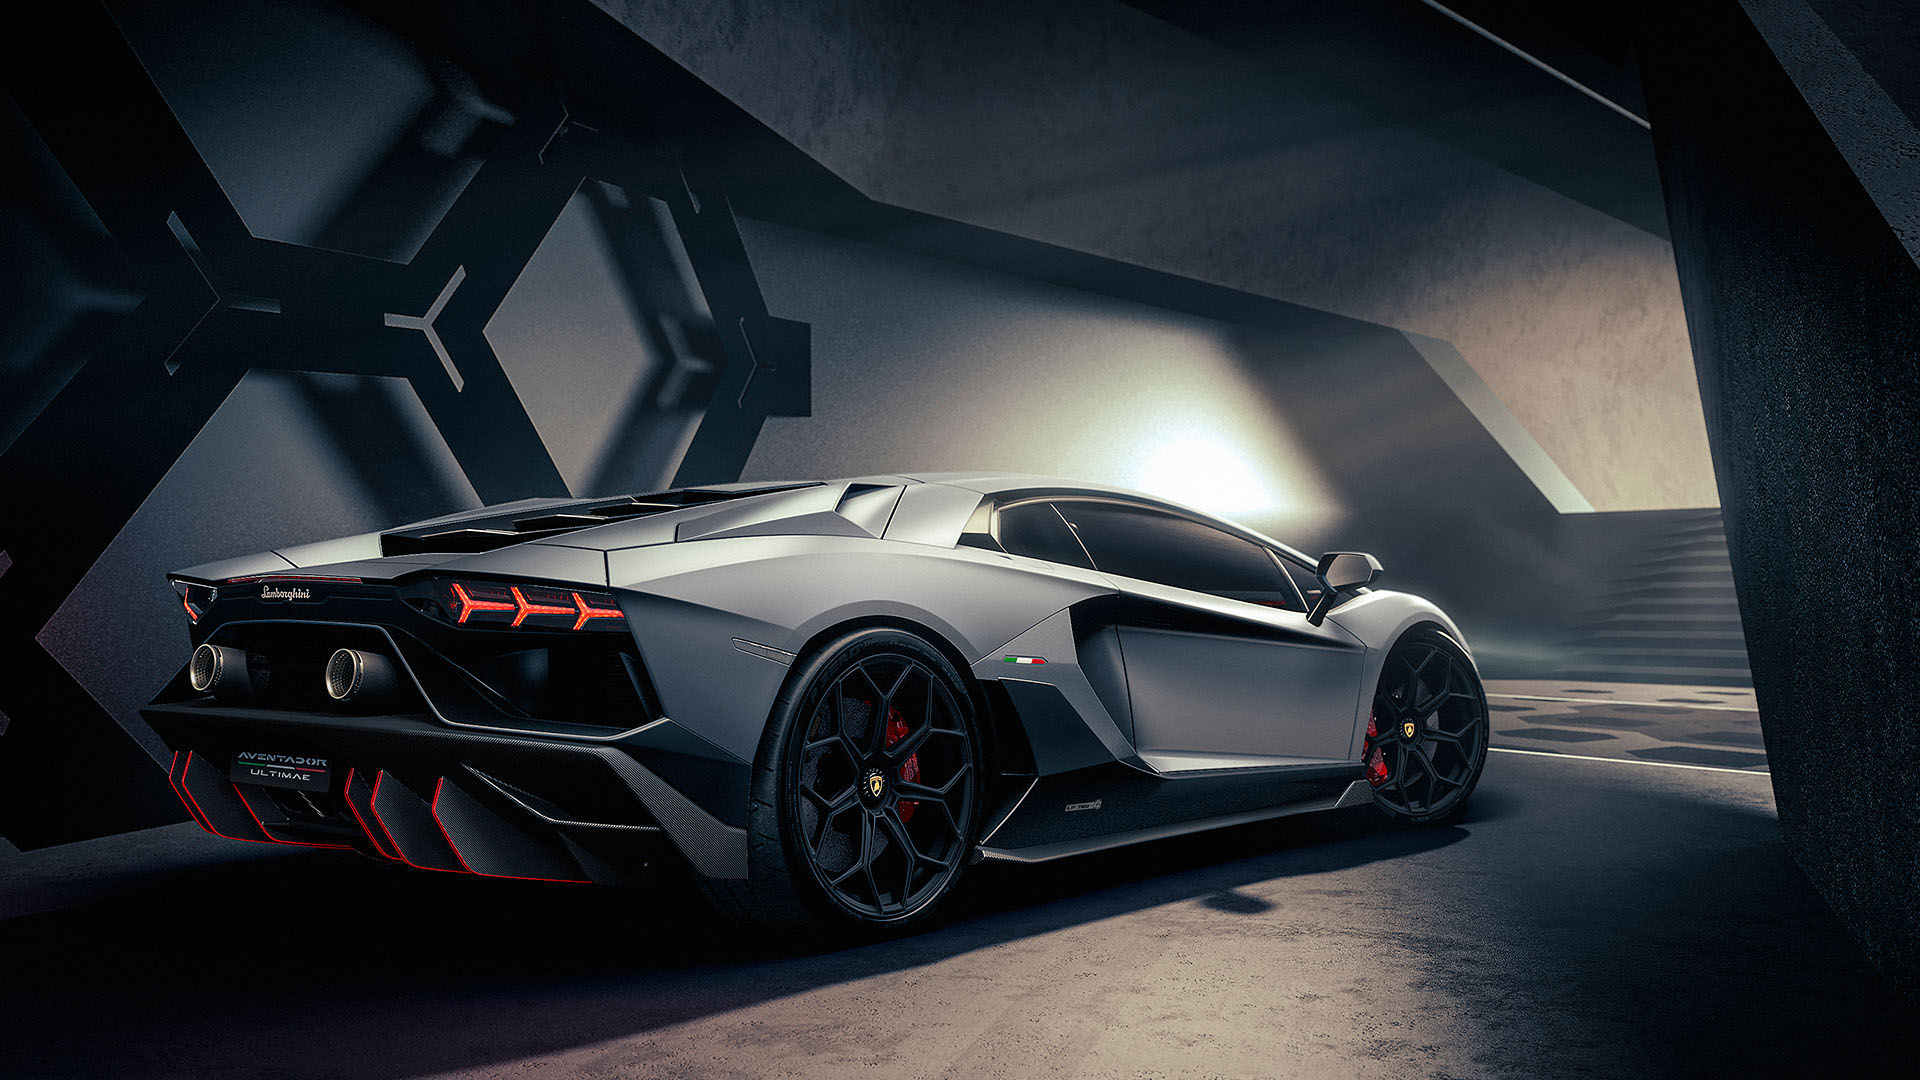 Dòng xe cao cấp Linea Aventador của Lamborghini mang lại cảm giác sang trọng và đẳng cấp cho người lái. Xem hình ảnh Linea Aventador và cảm nhận sự hoàn hảo, tinh tế trong từng đường nét và sự tinh tế trong từng chi tiết của xe!